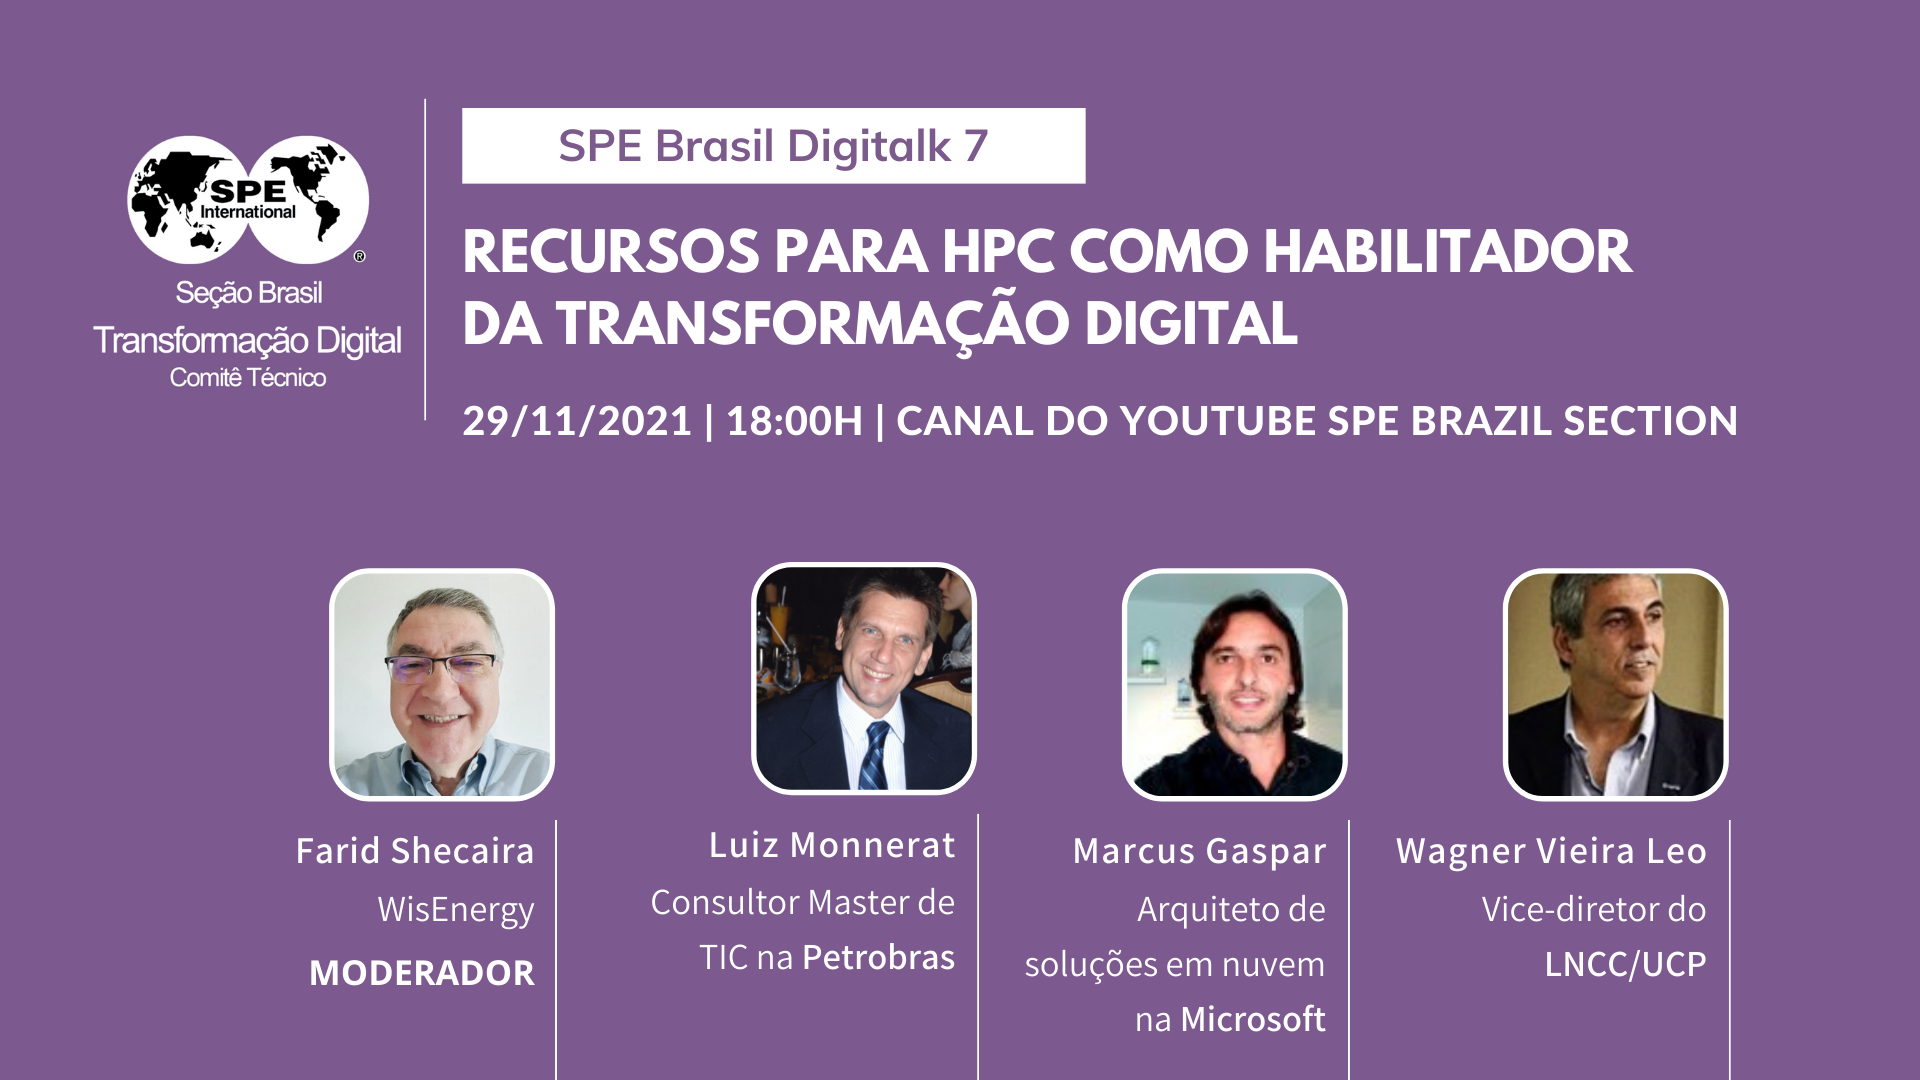 SPE Brasil DigiTalks 7: “Recursos para HPC como habilitador da transformação digital”.